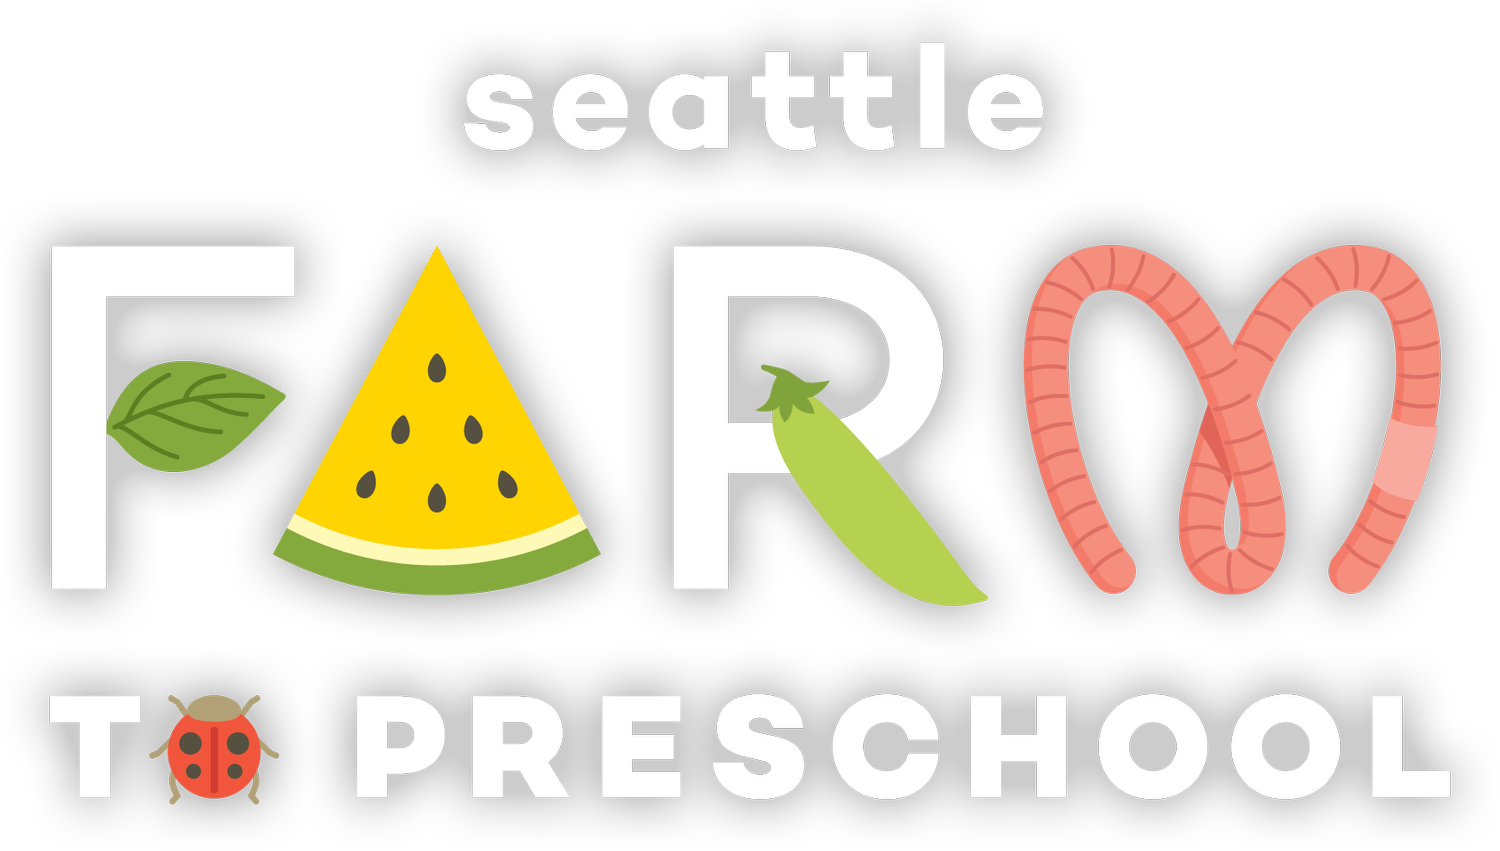 Seattle Farm to Preschool Program